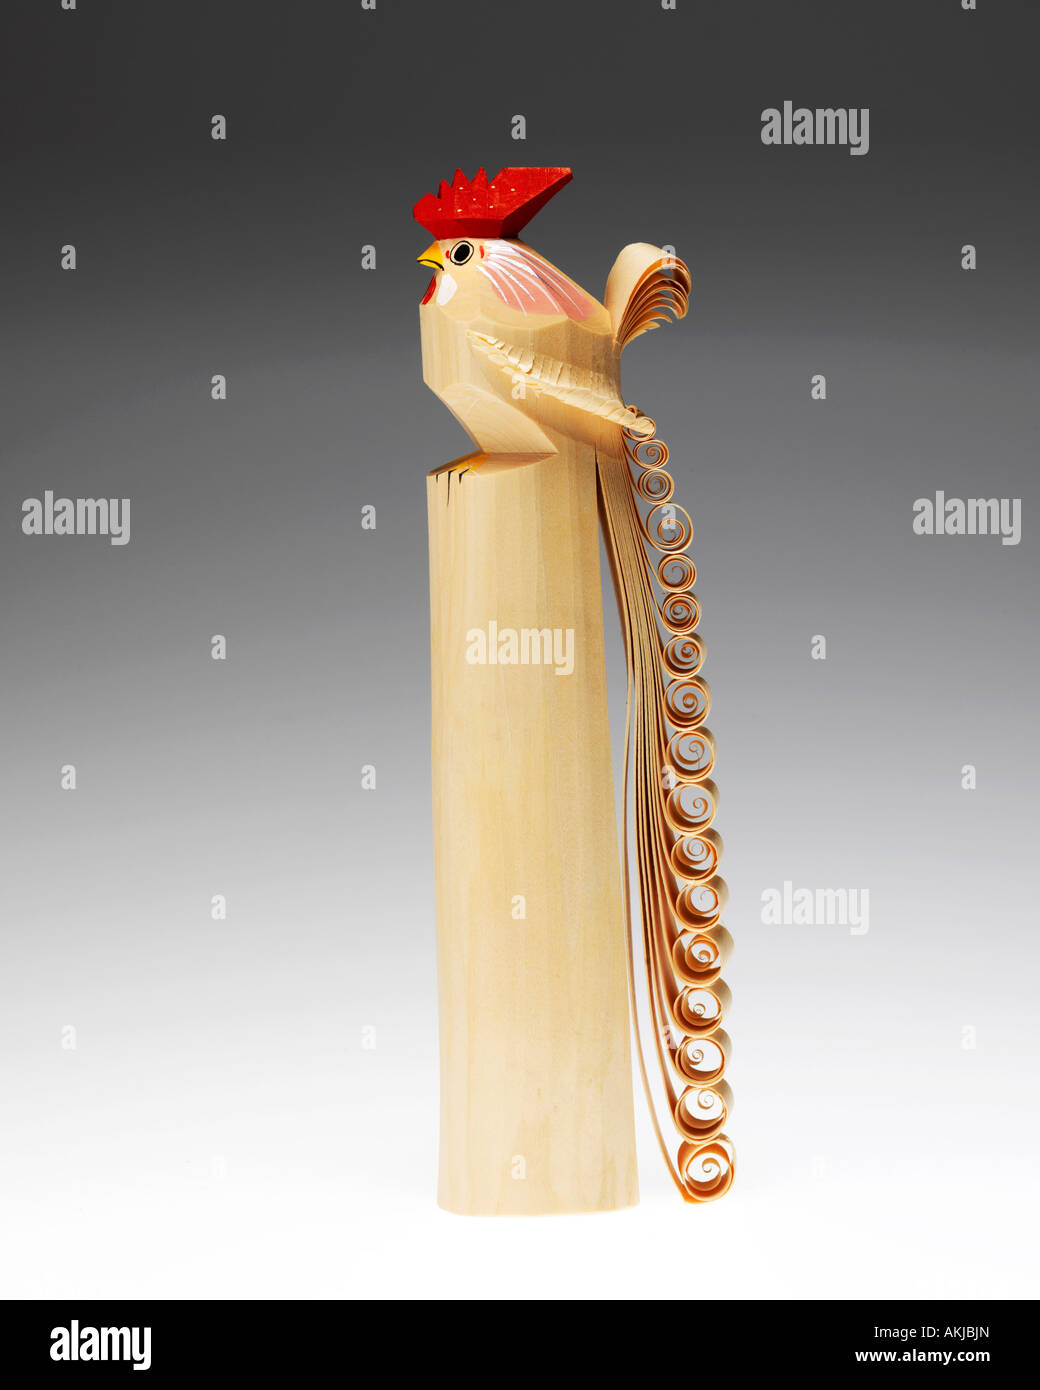 Japanese Yamagata traditional wooden rooster carving "sasano bori" Stock Photo